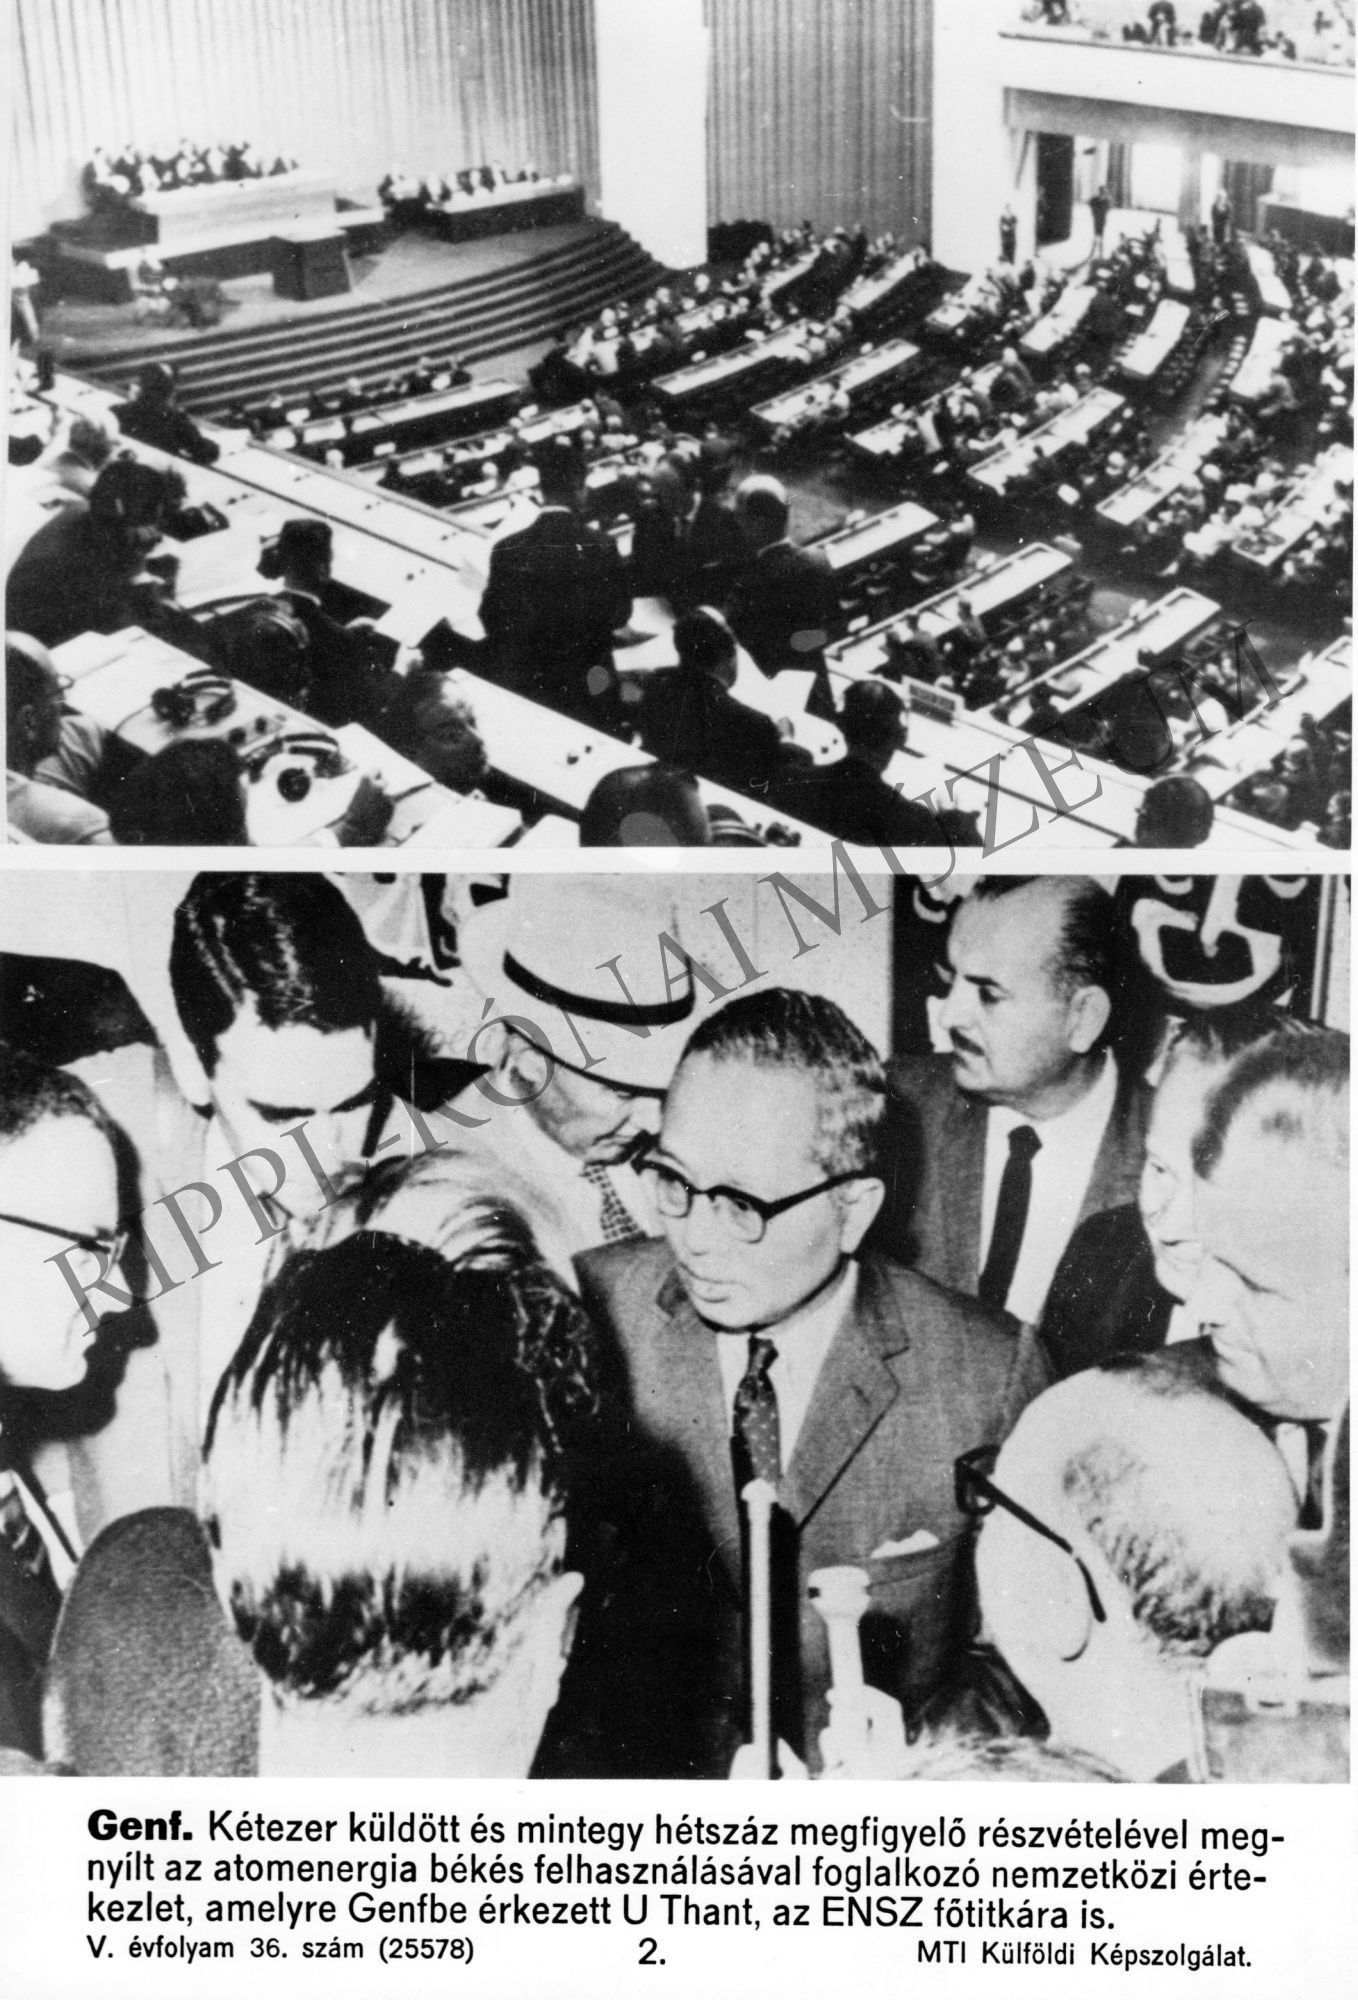 Kétosztatú kép:
1.Az atomenergia békés felhasználásával foglalkozó genfi értekezlet.
2. U Thant, az ENSZ főtitkára Genfbe érkezett (Rippl-Rónai Múzeum CC BY-NC-SA)